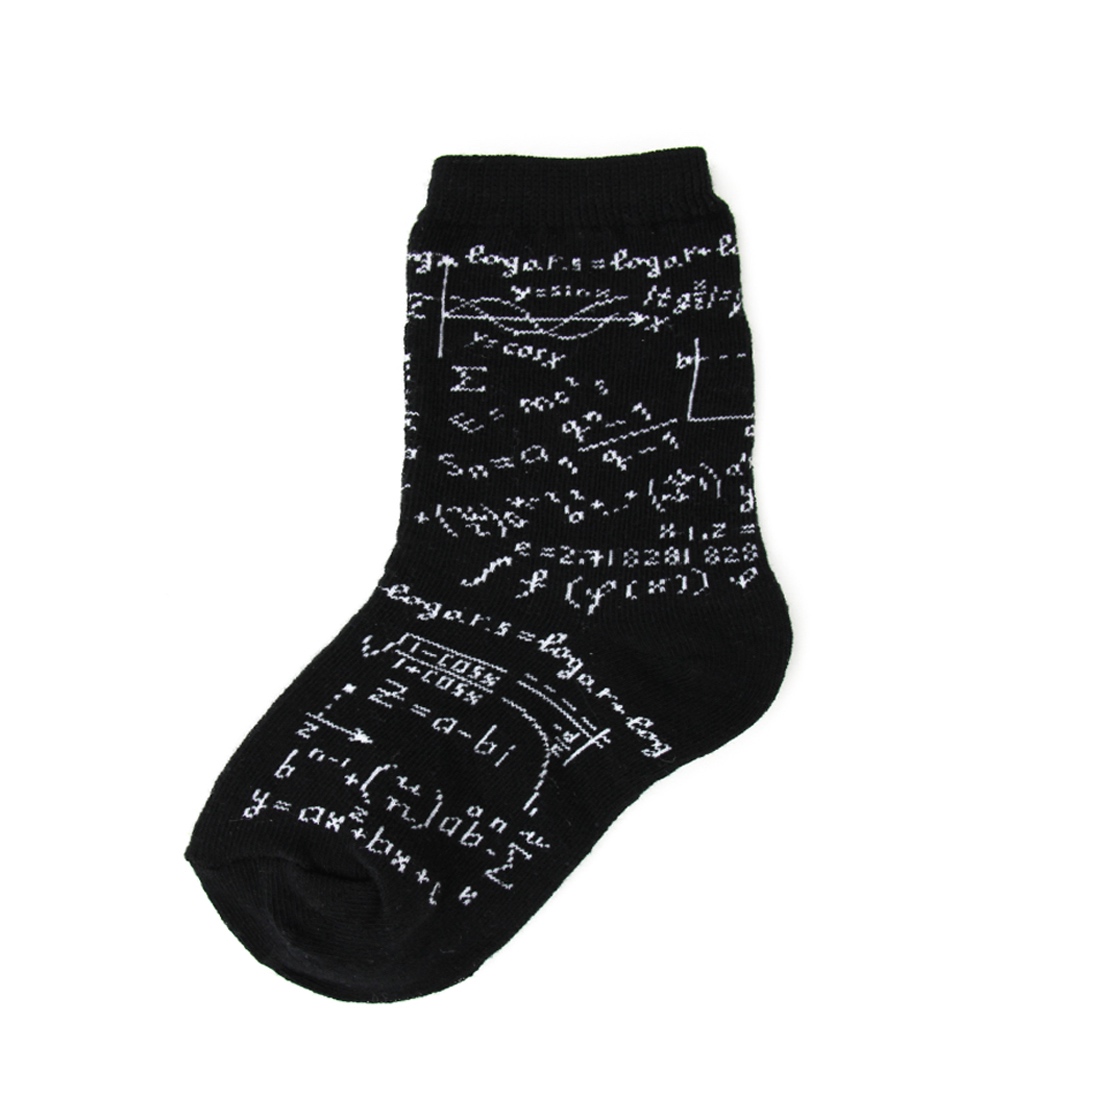 Children's Genius Socks, Kids Novelty Socks: Foot Traffic